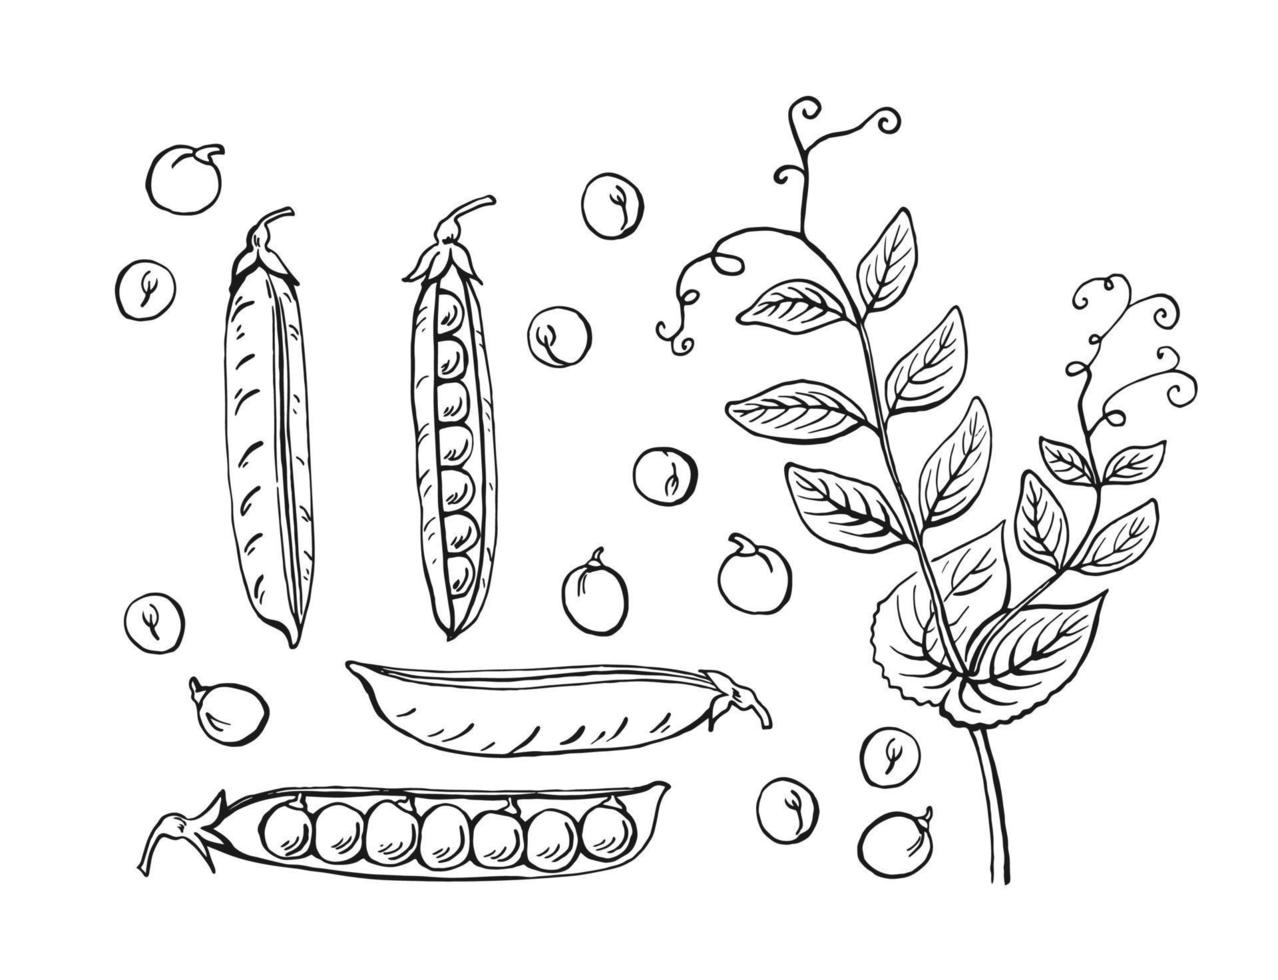 erwten peulen schets. set. handgetekende illustratie geconverteerd naar vector. biologisch voedsel illustratie geïsoleerd op een witte achtergrond. vector